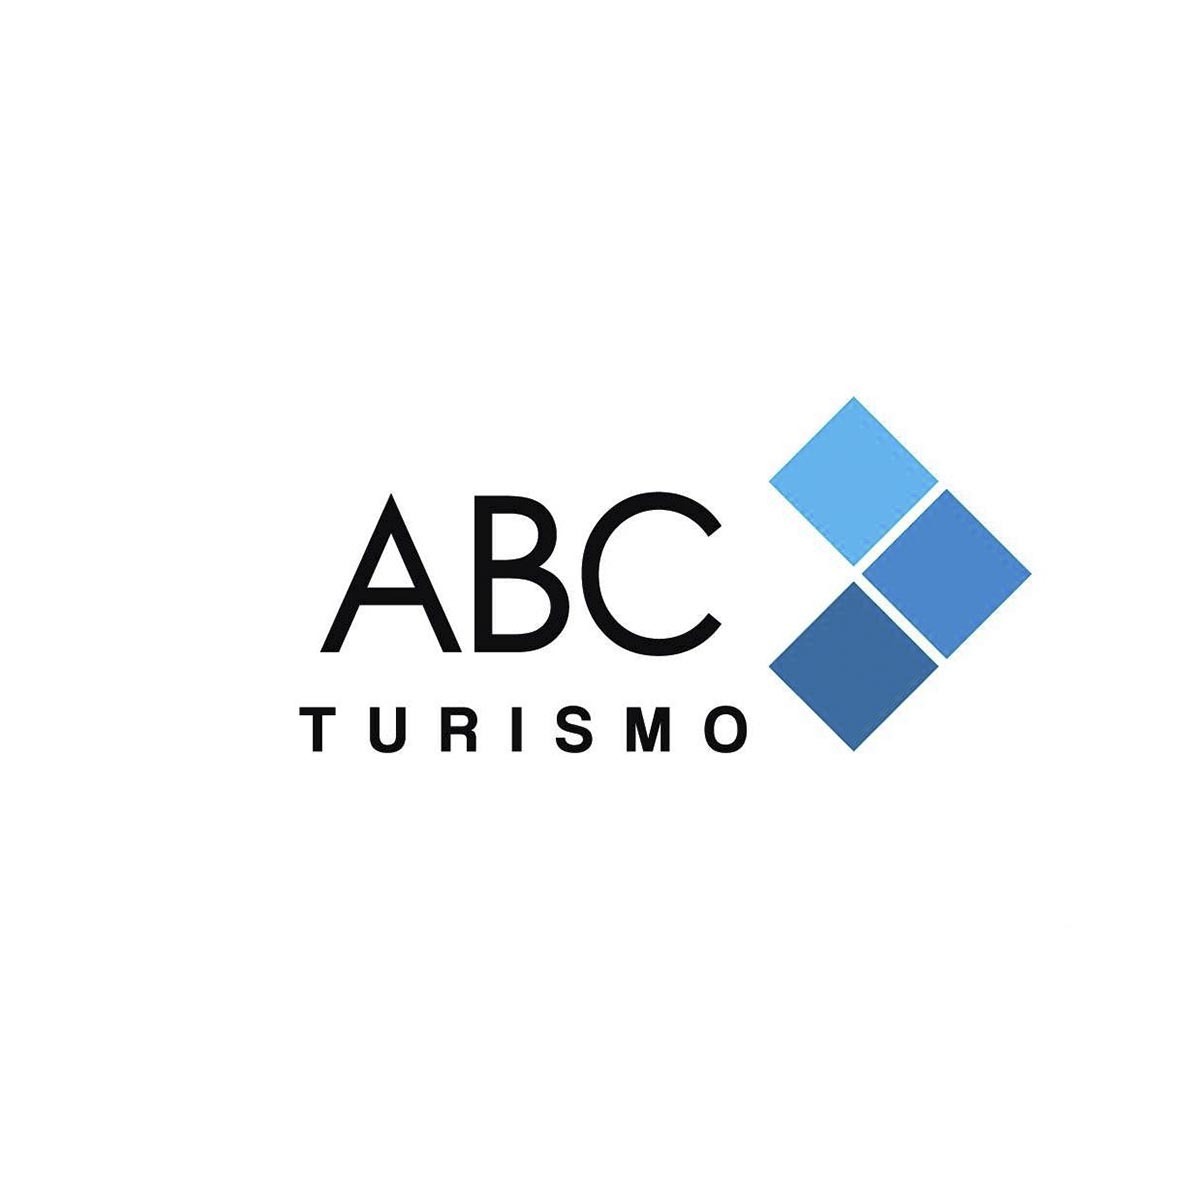 ABC TURISMO